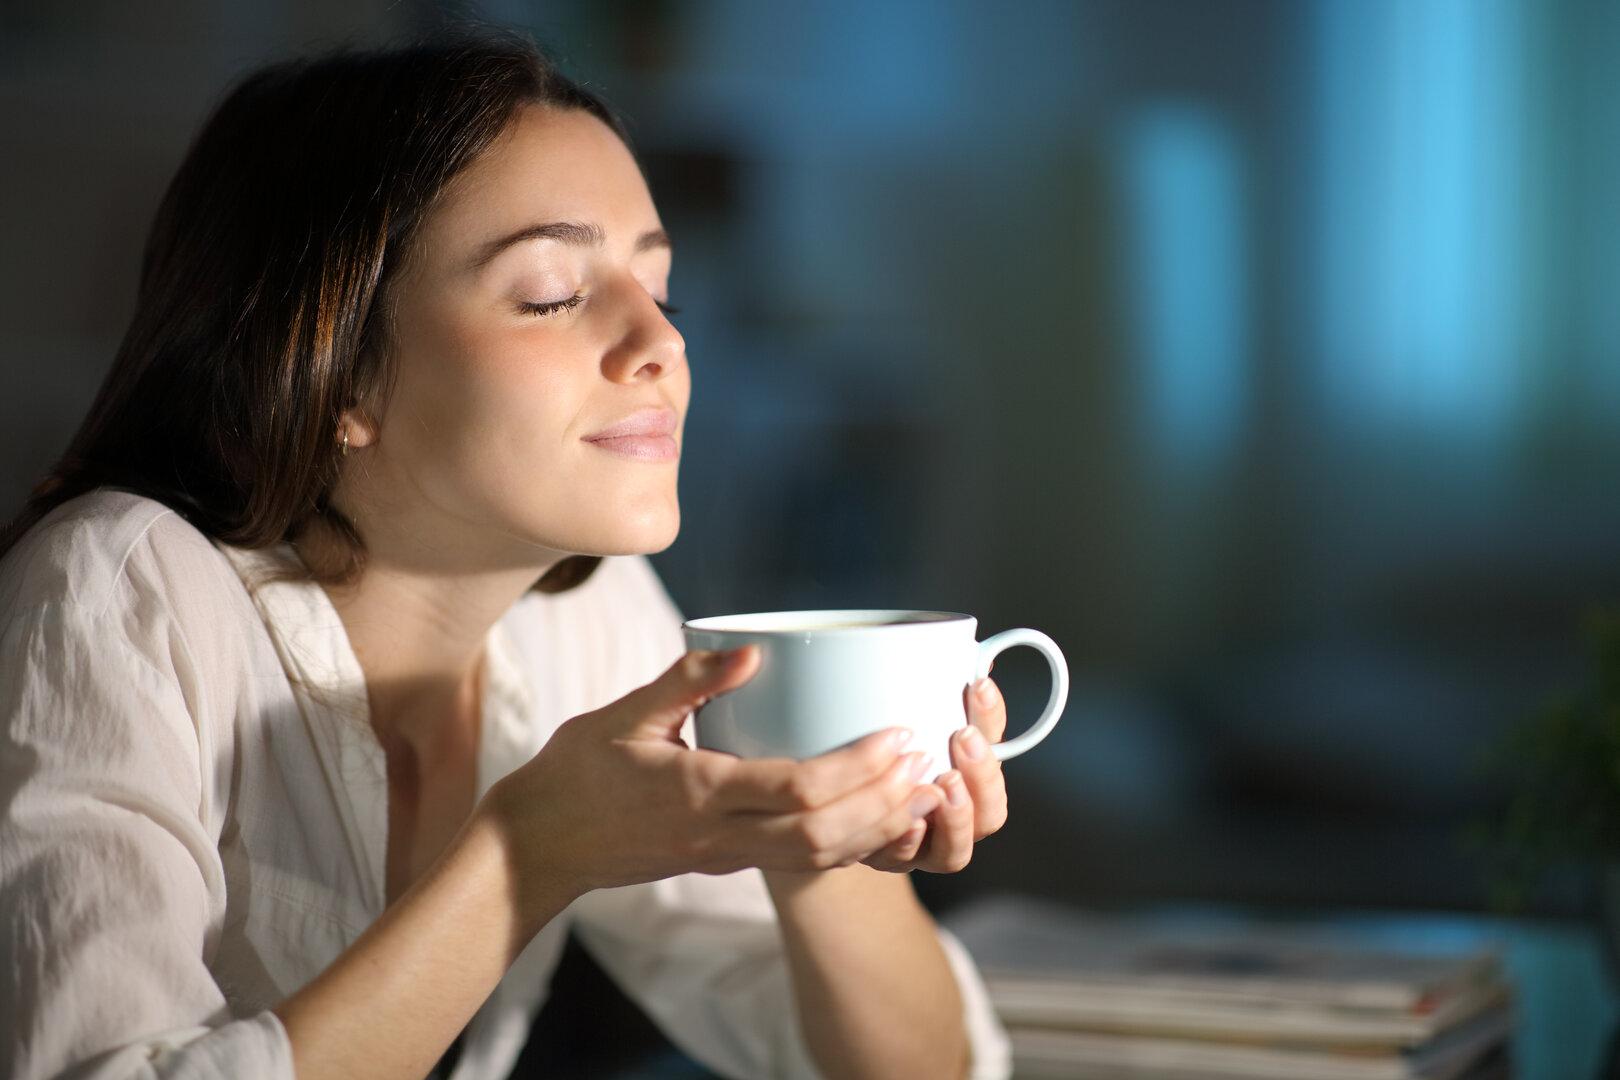 Kannenweise oder kaum: Entscheiden unsere Gene, wie viel Kaffee wir trinken?